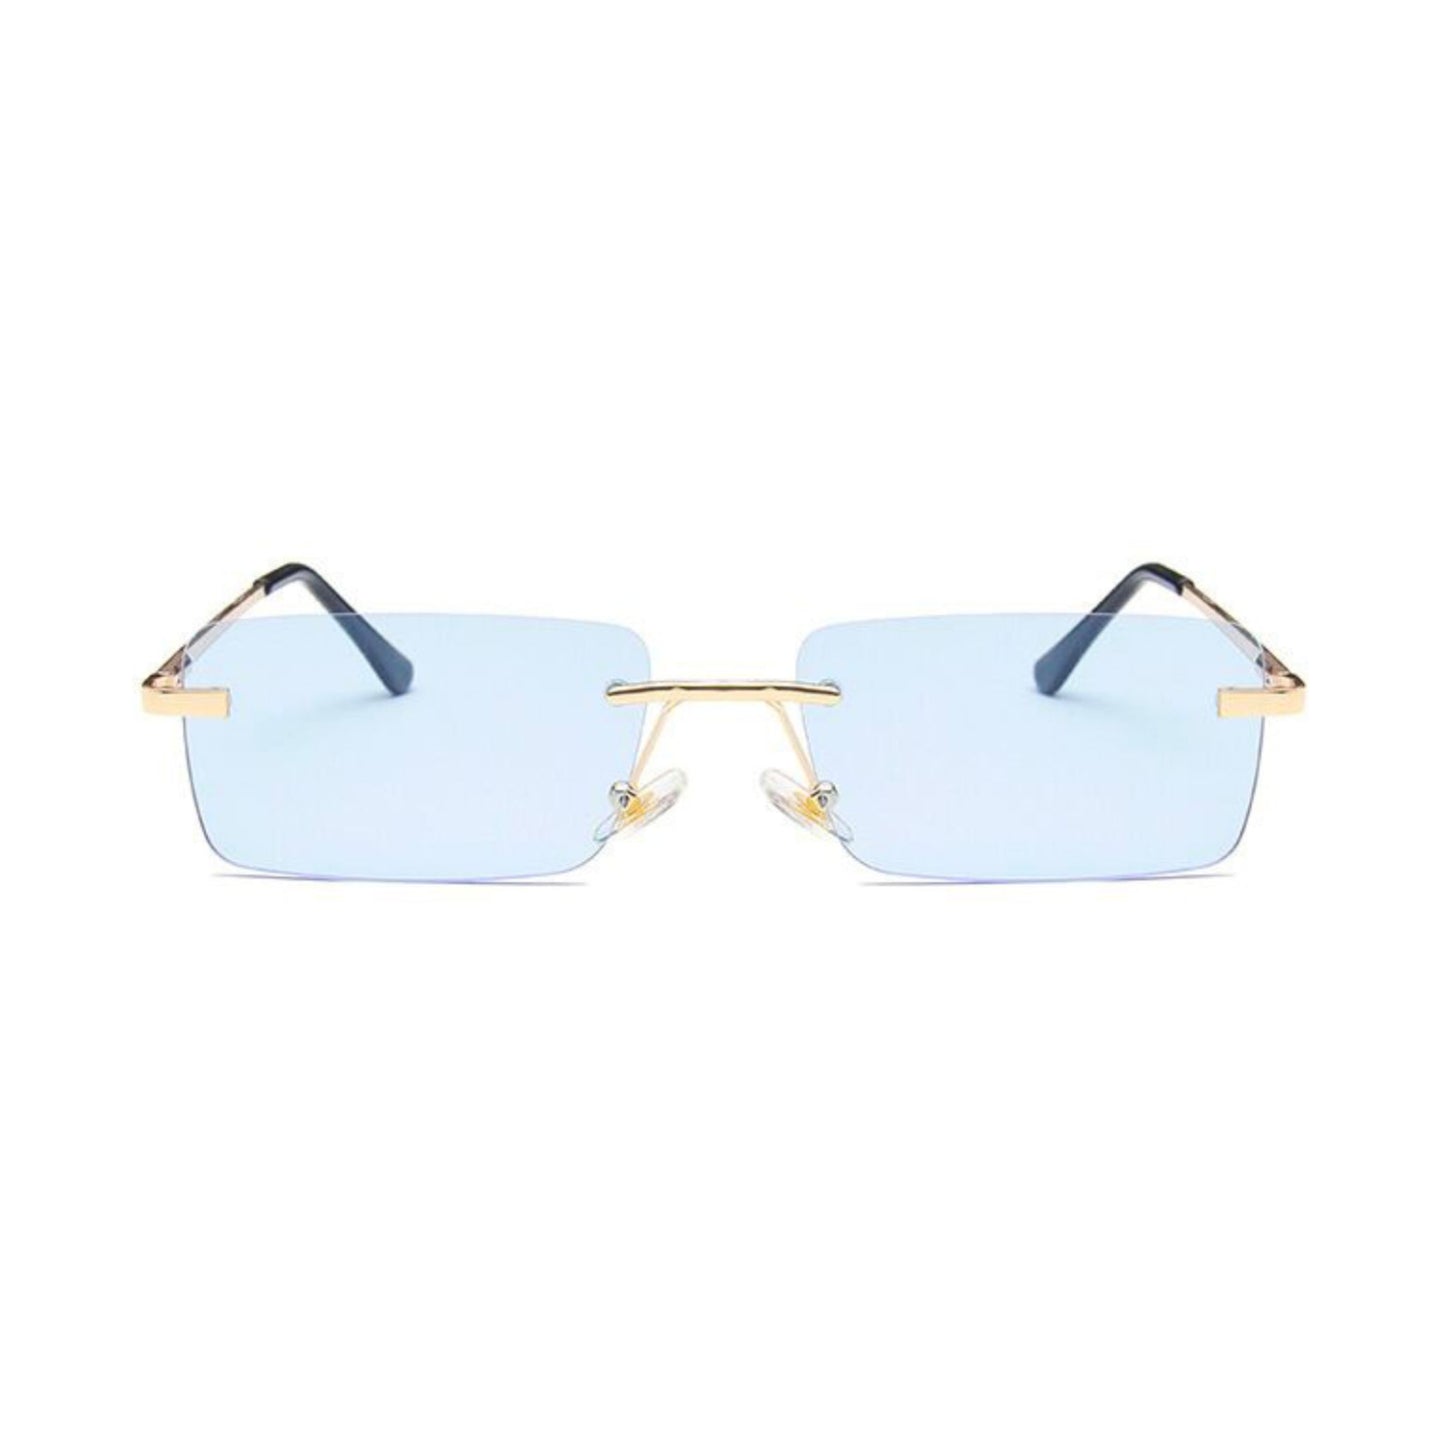 Ορθογώνια Γυαλιά Ηλίου Tez της Exposure Sunglasses με προστασία UV400 σε χρυσό χρώμα σκελετού και μπλε φακό.